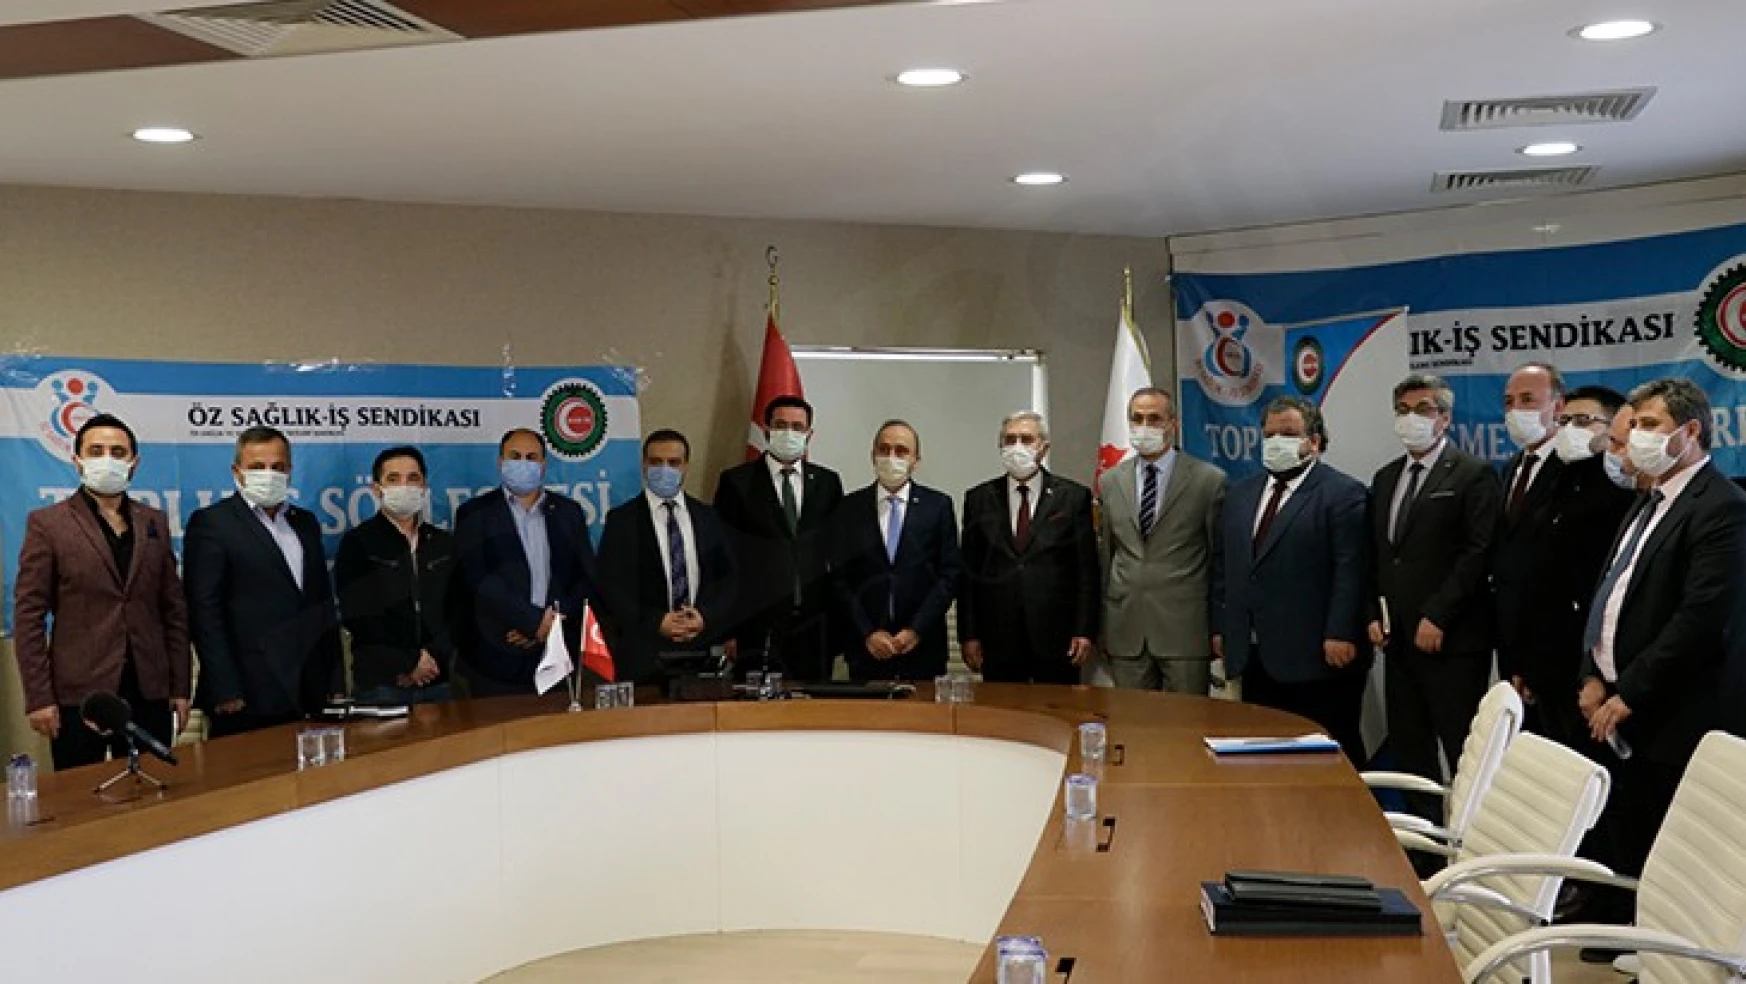 Öz Sağlık-İş Sendikası ile KSÜ 650 işçiyi kapsayan TİS'i imzalandı